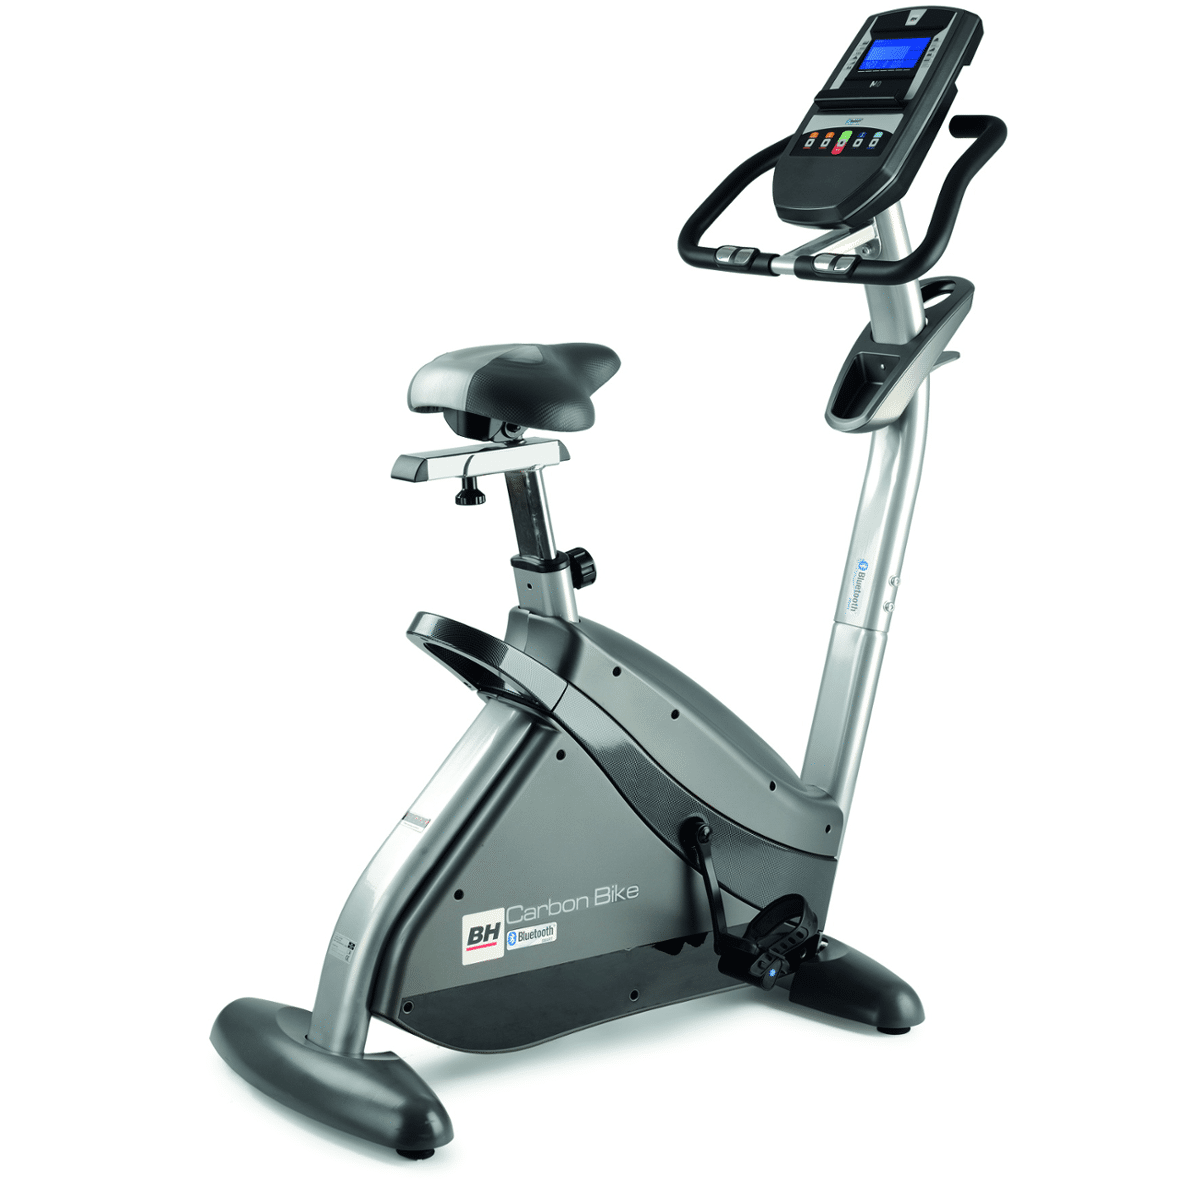 Rower Treningowy Magnetyczny i.Carbon Bike Bluetooth H8705I BH Fitness (Zdjęcie 1)